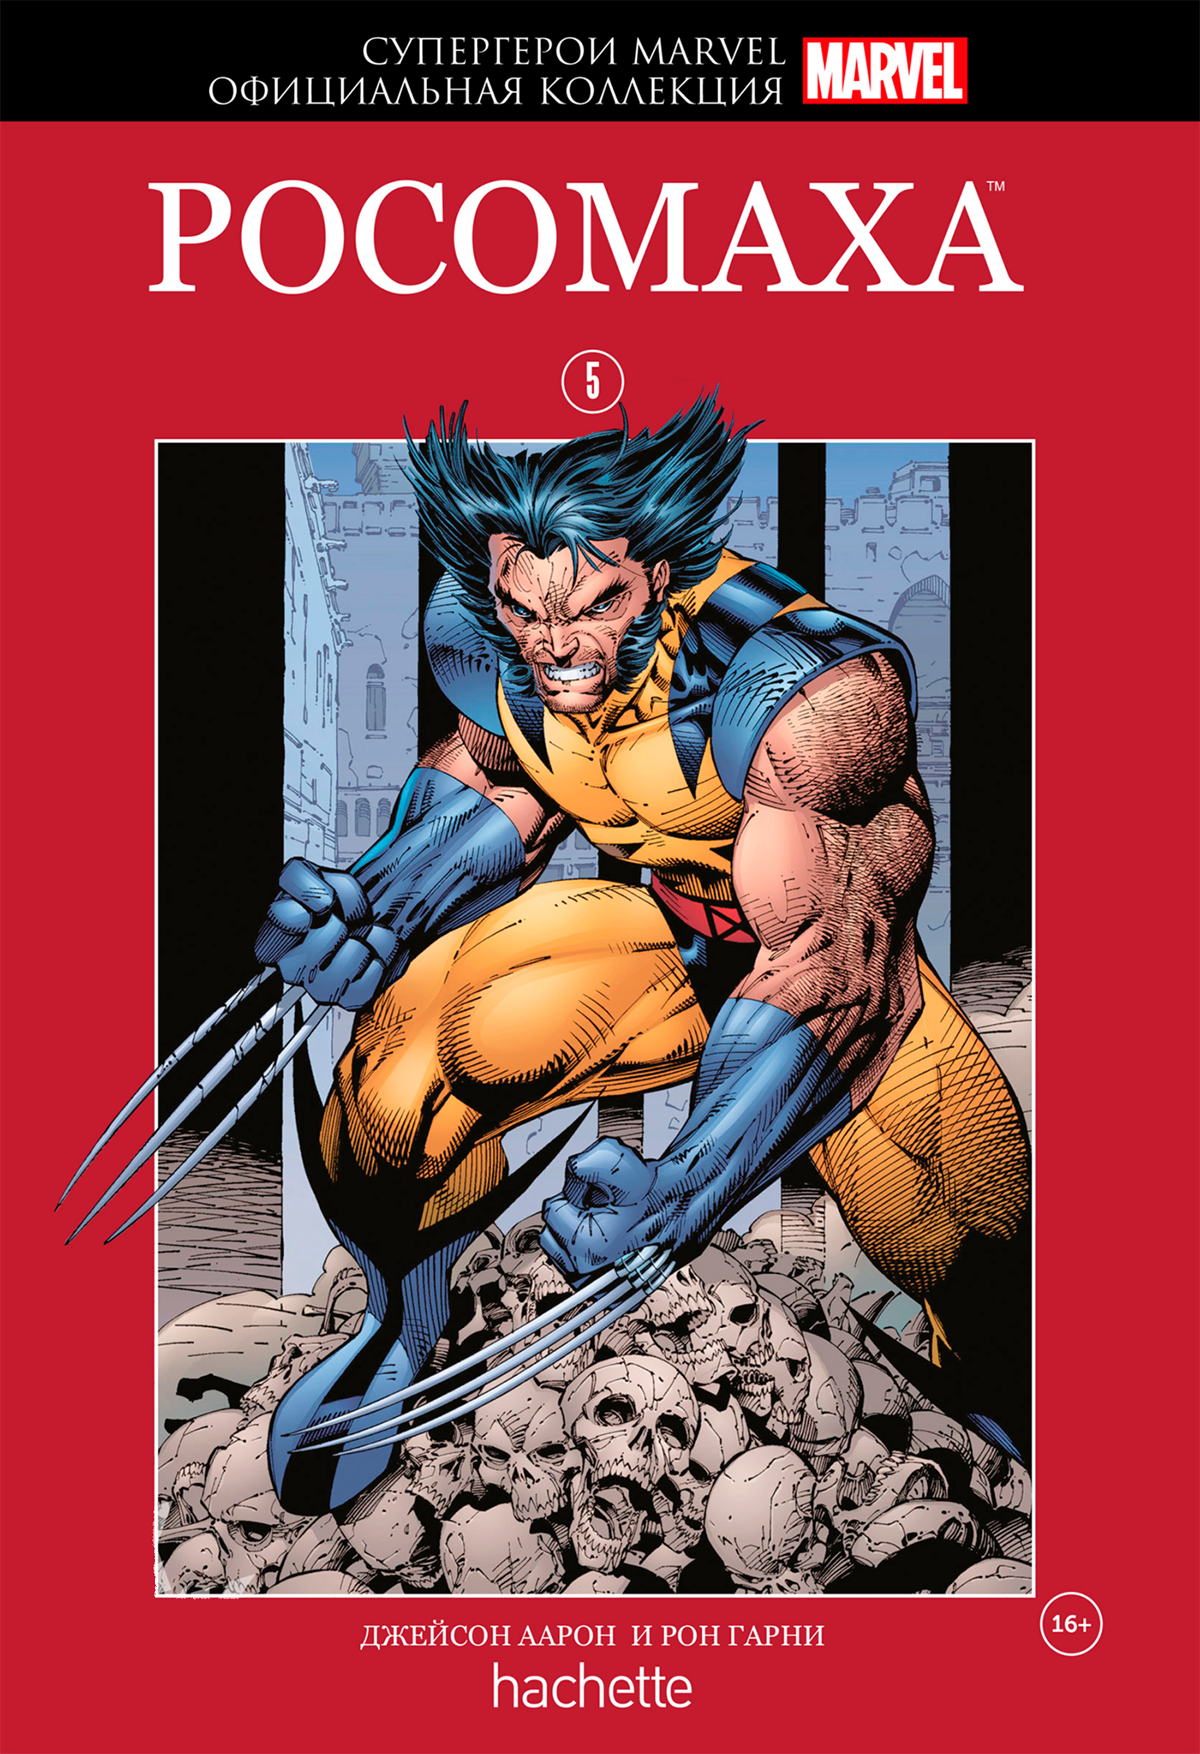 Hachette Официальная коллекция комиксов Супергерои Marvel: Росомаха. Том 5